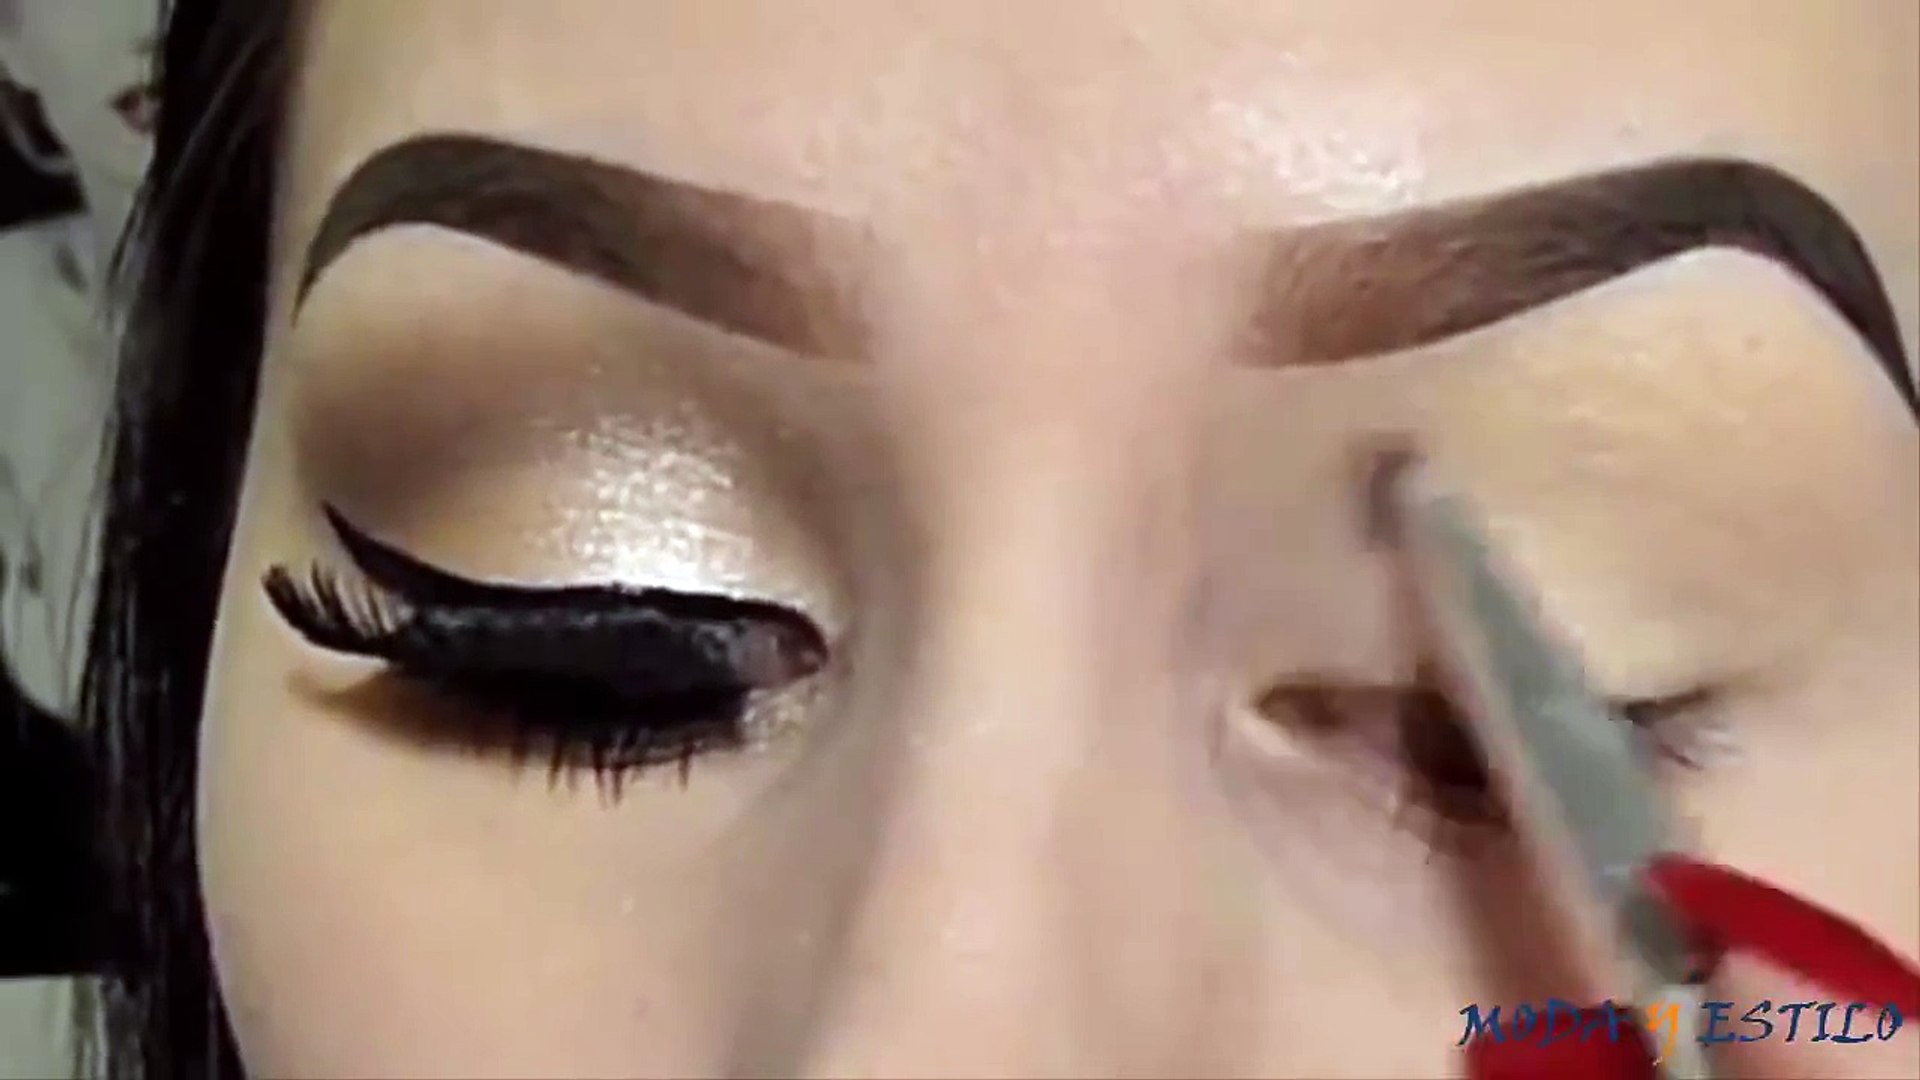 Maquillaje- Ojos ahumados - Sombra y Colores naturales - Vídeo Dailymotion